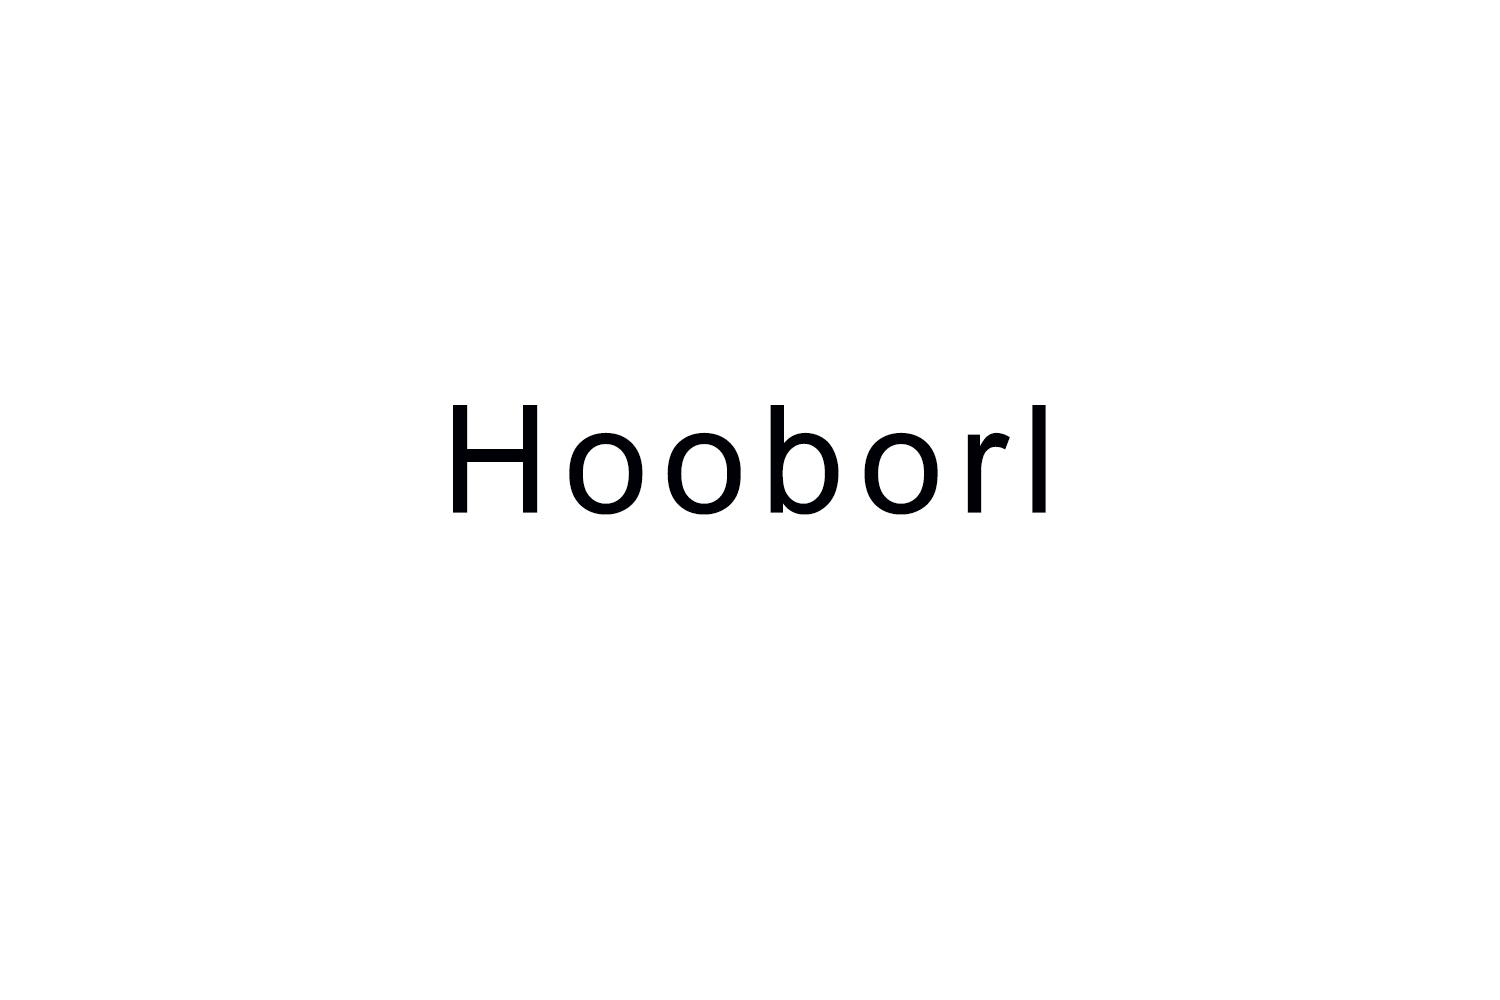 Hooborl